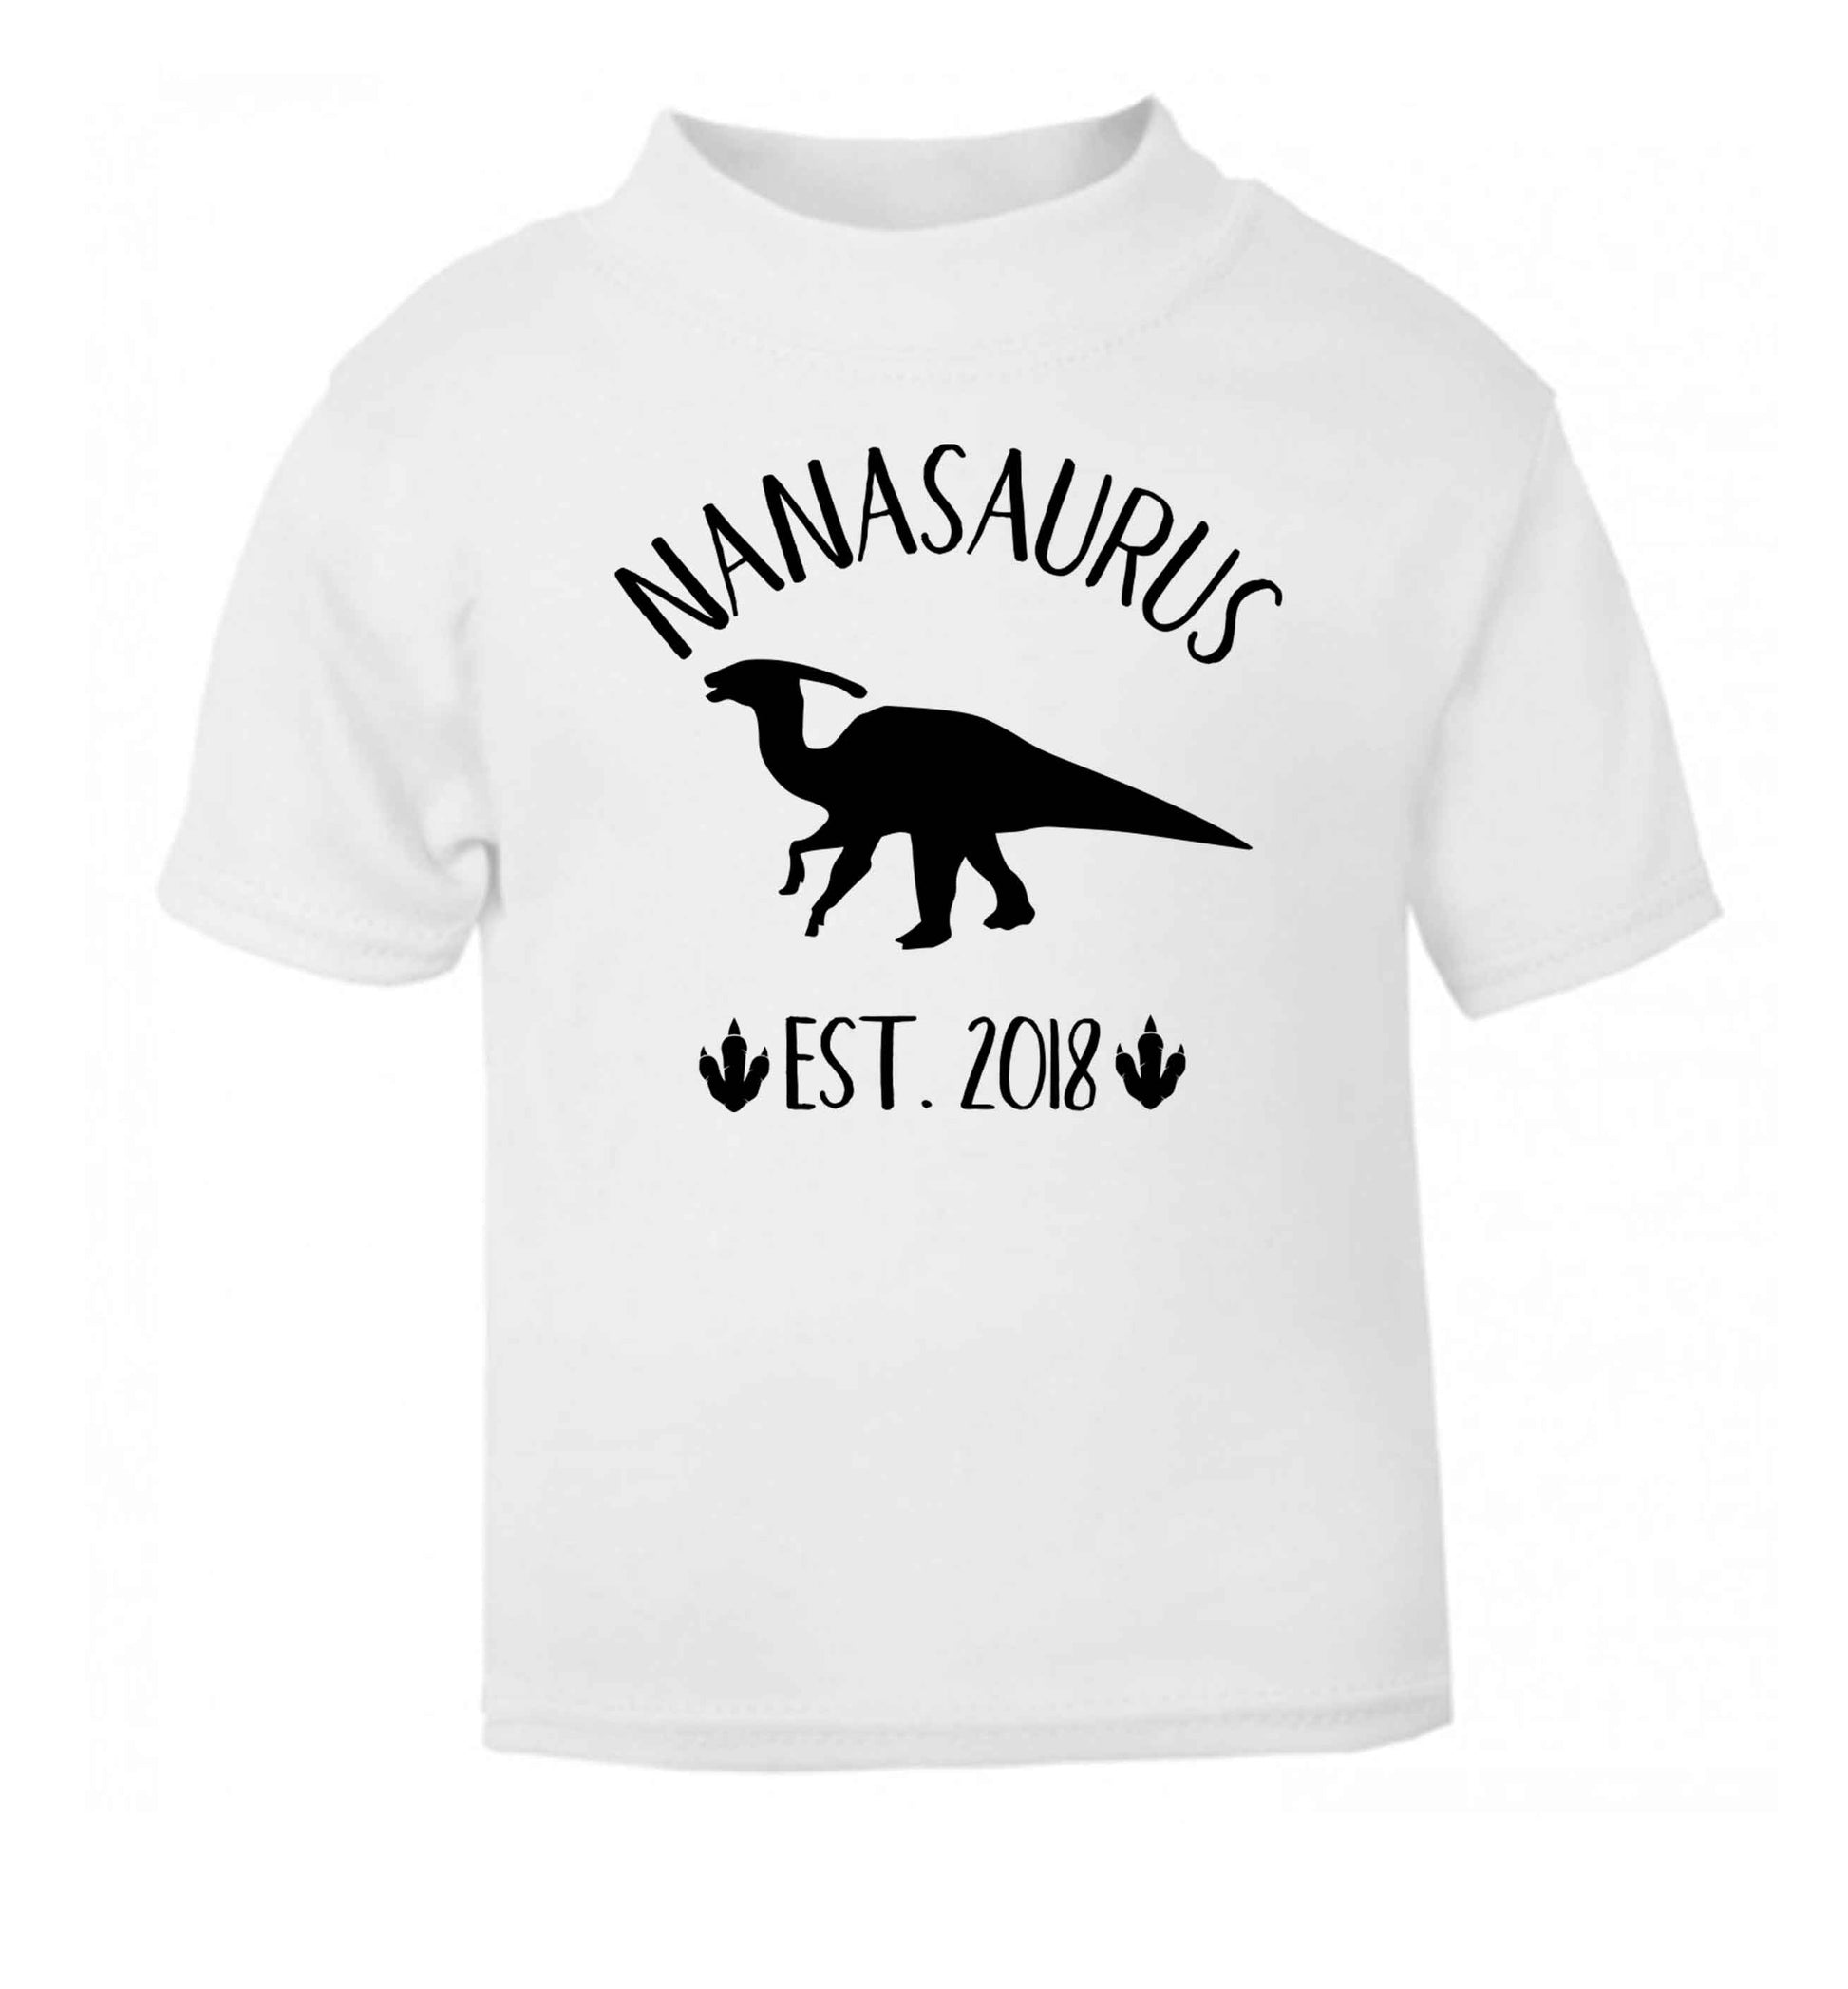 Personalised nanasaurus since (custom date) white Baby Toddler Tshirt 2 Years